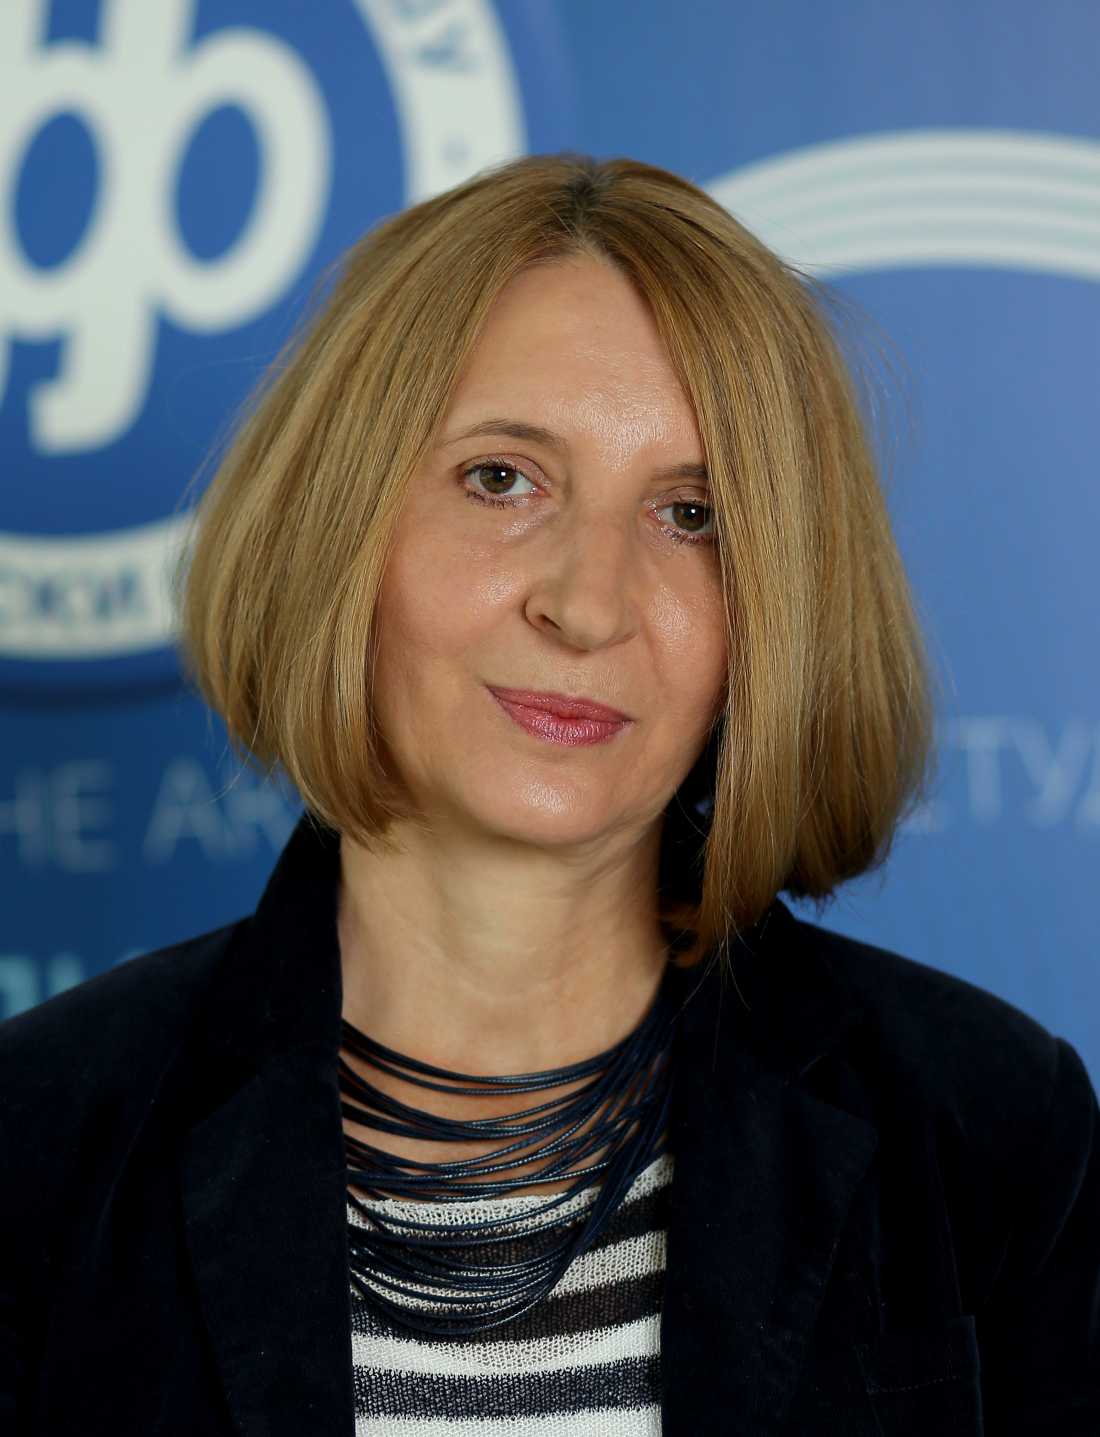 Јасмина Петровић, Департман за социологију, Филозофски факултет